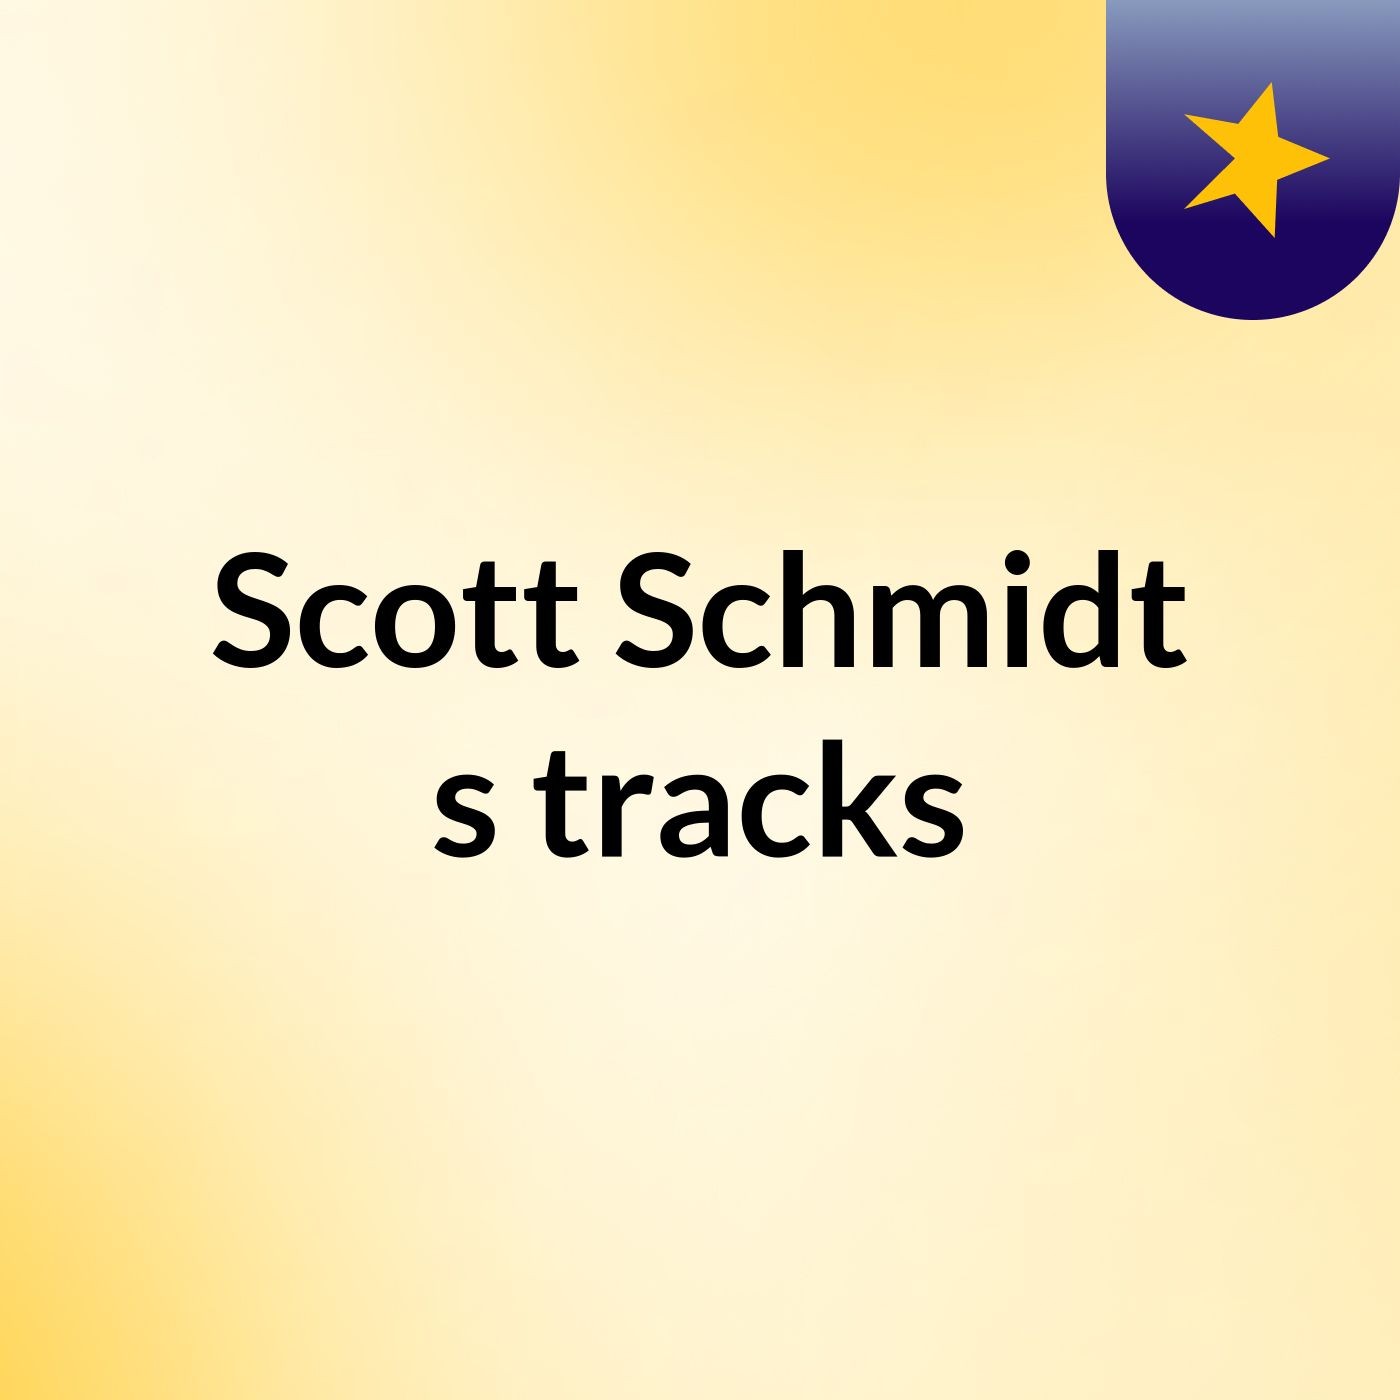 Scott Schmidt's tracks